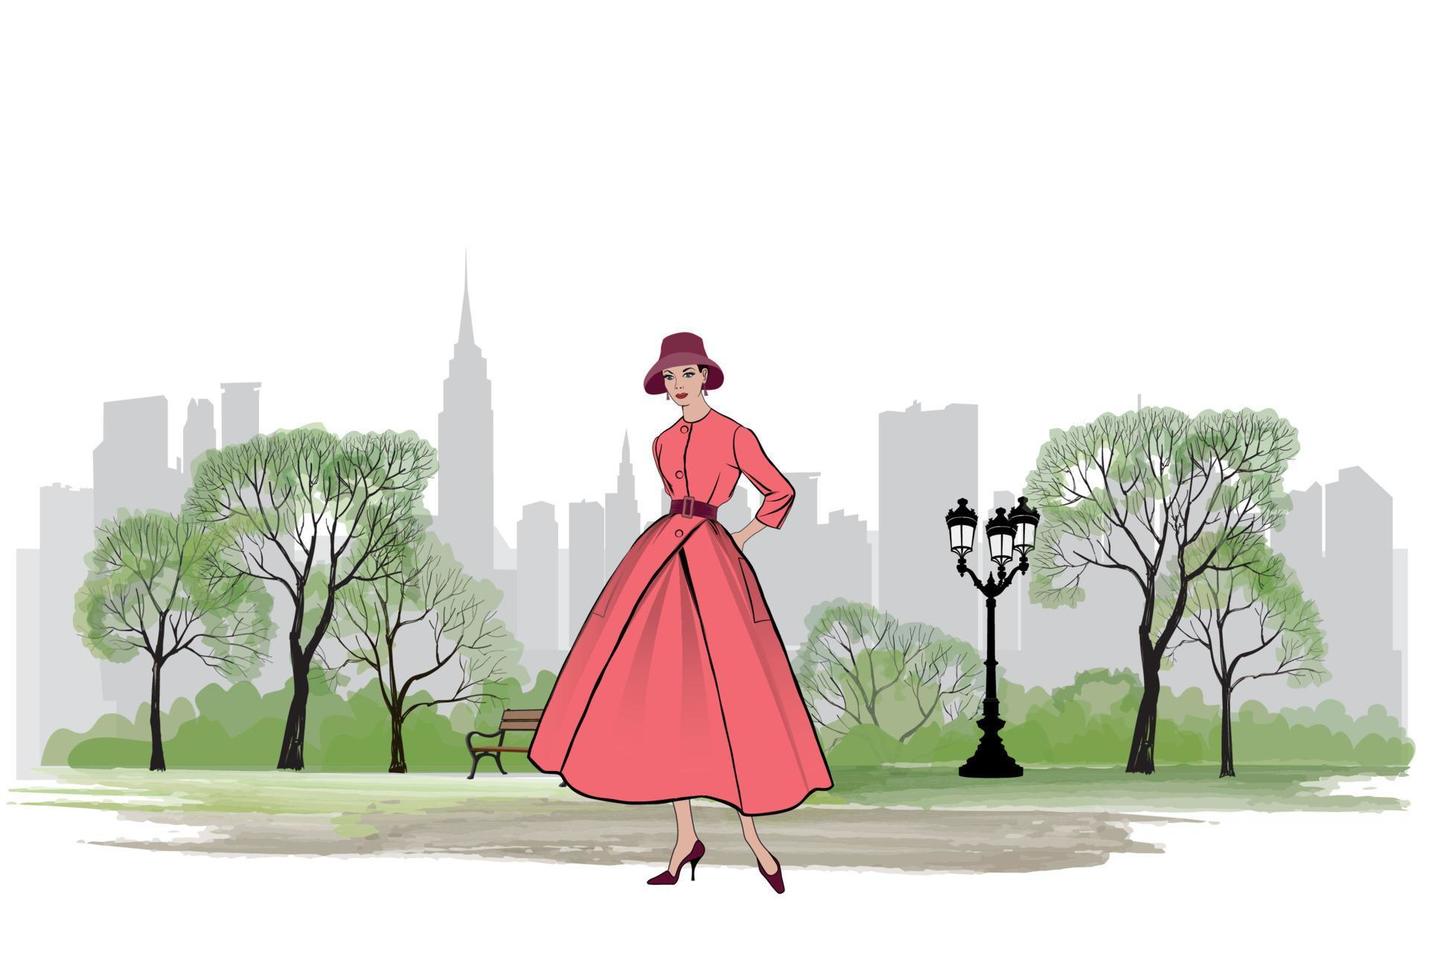 moda retrô mulher vestida estilo dos anos 1950 1960 na paisagem do parque da cidade. elegante jovem em roupas vintage. silhuetas de festa de moda outono dos anos 60. horizonte da paisagem urbana. ilustração da vida urbana. vetor